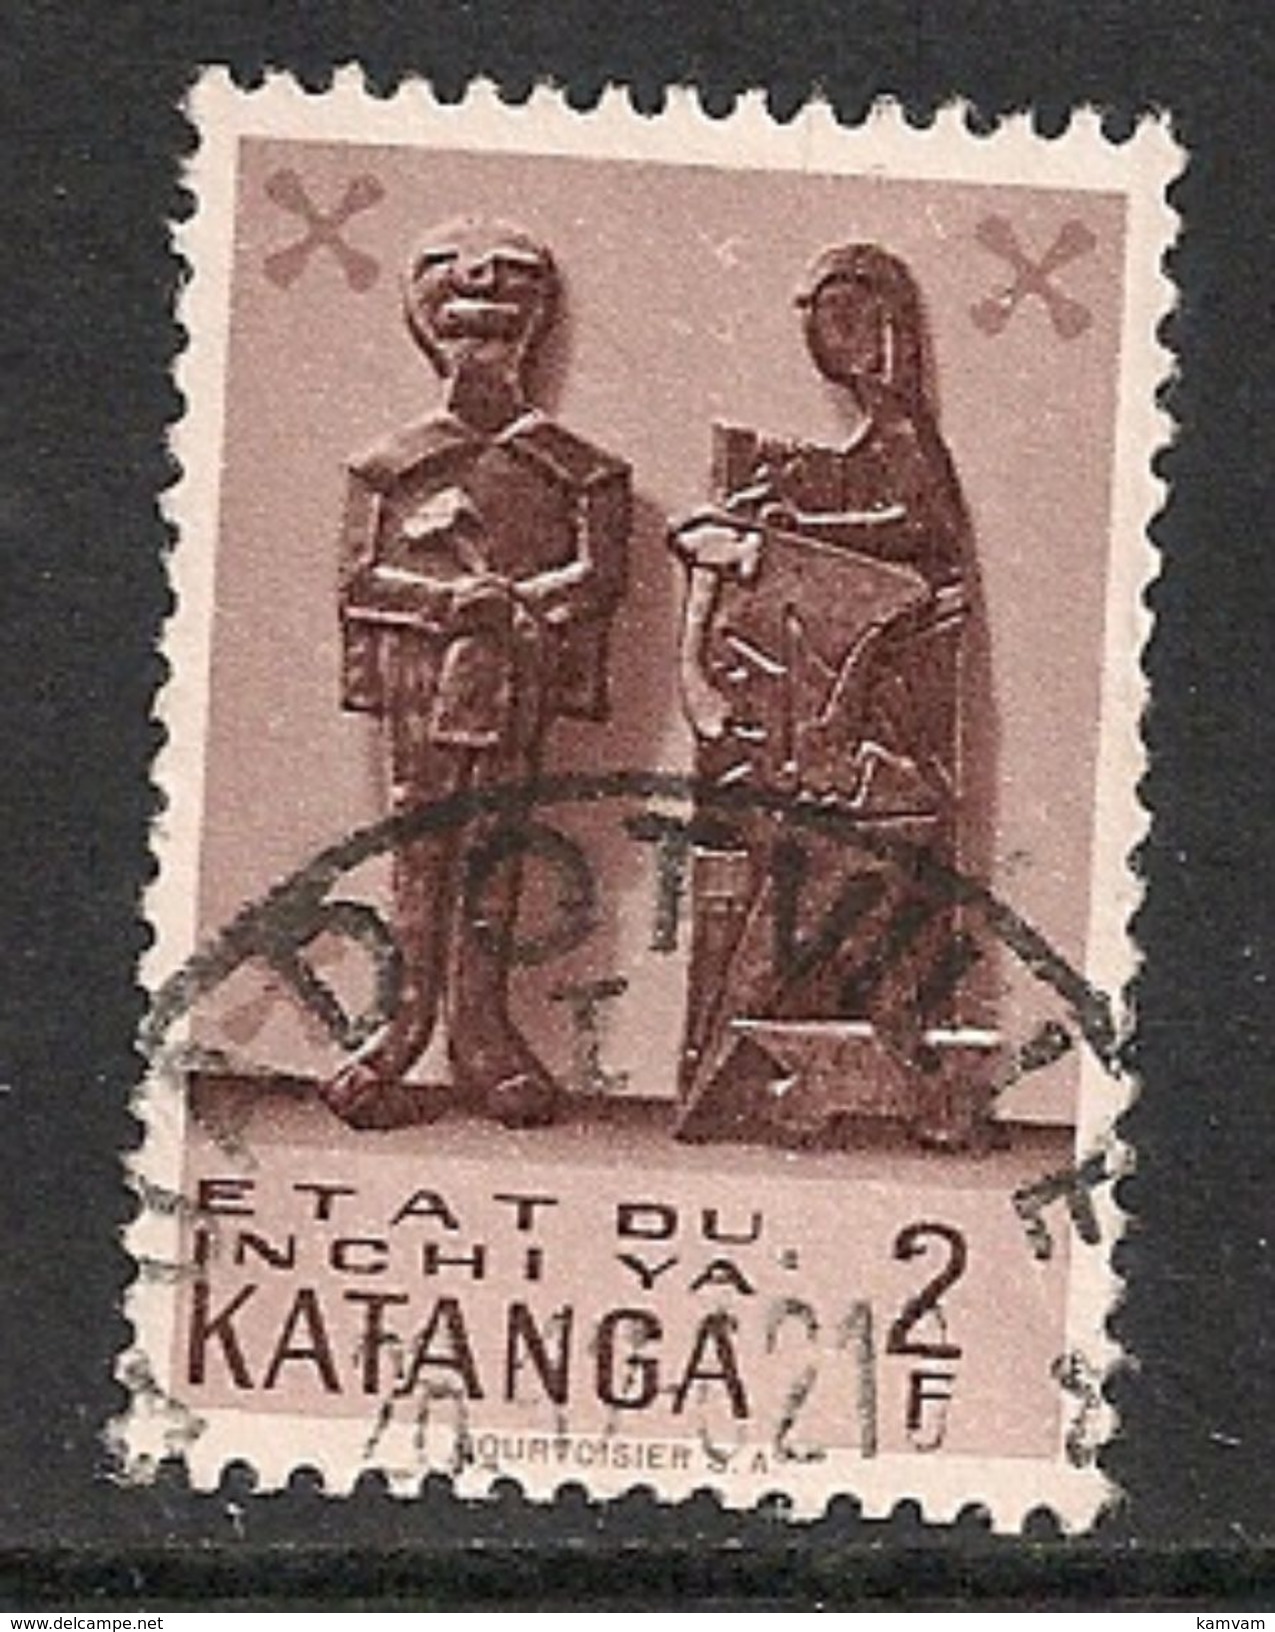 KATANGA 56 JADOTVILLE - Katanga